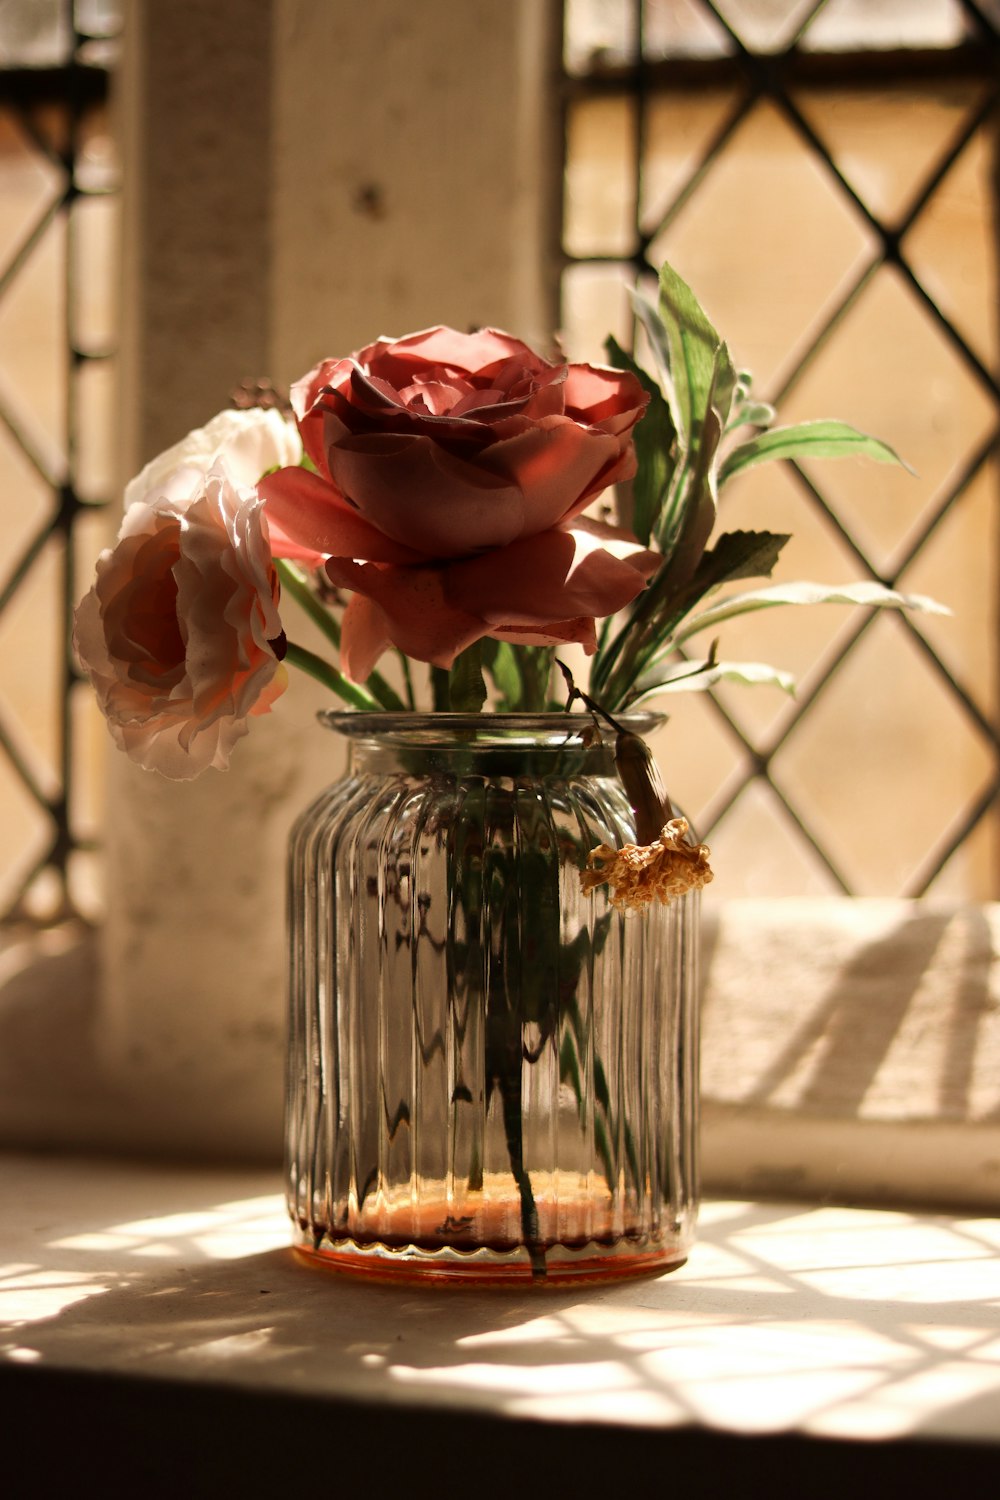 투명 유리 꽃병에 빨간 장미